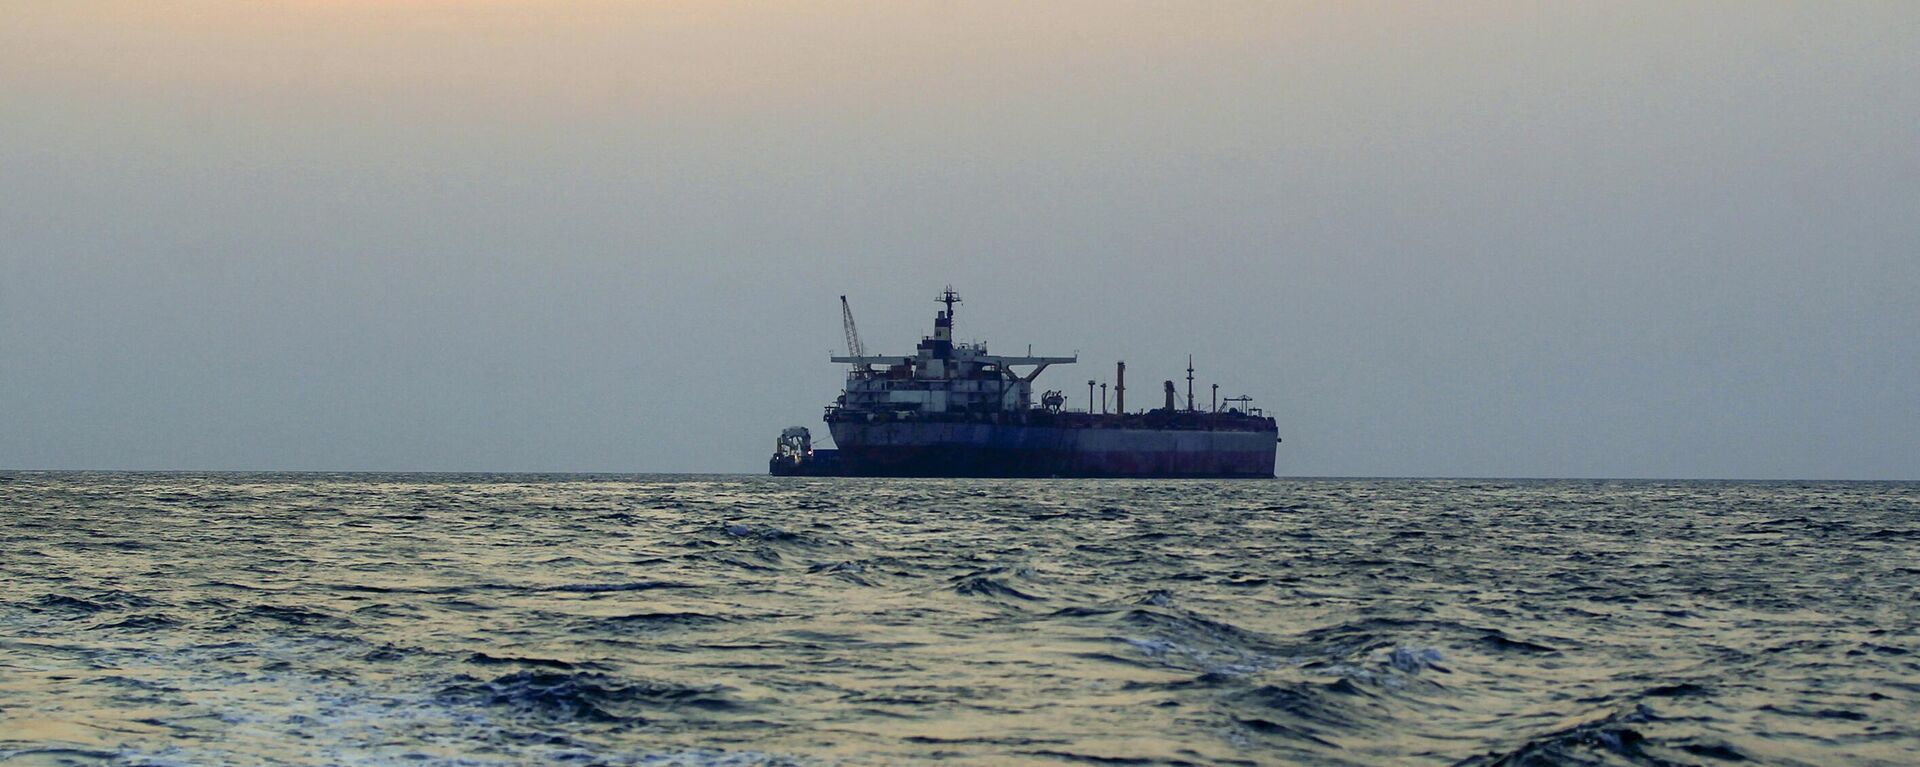 تعرض سفينة لحادث قرب صلالة في عمان.. تفاصيل